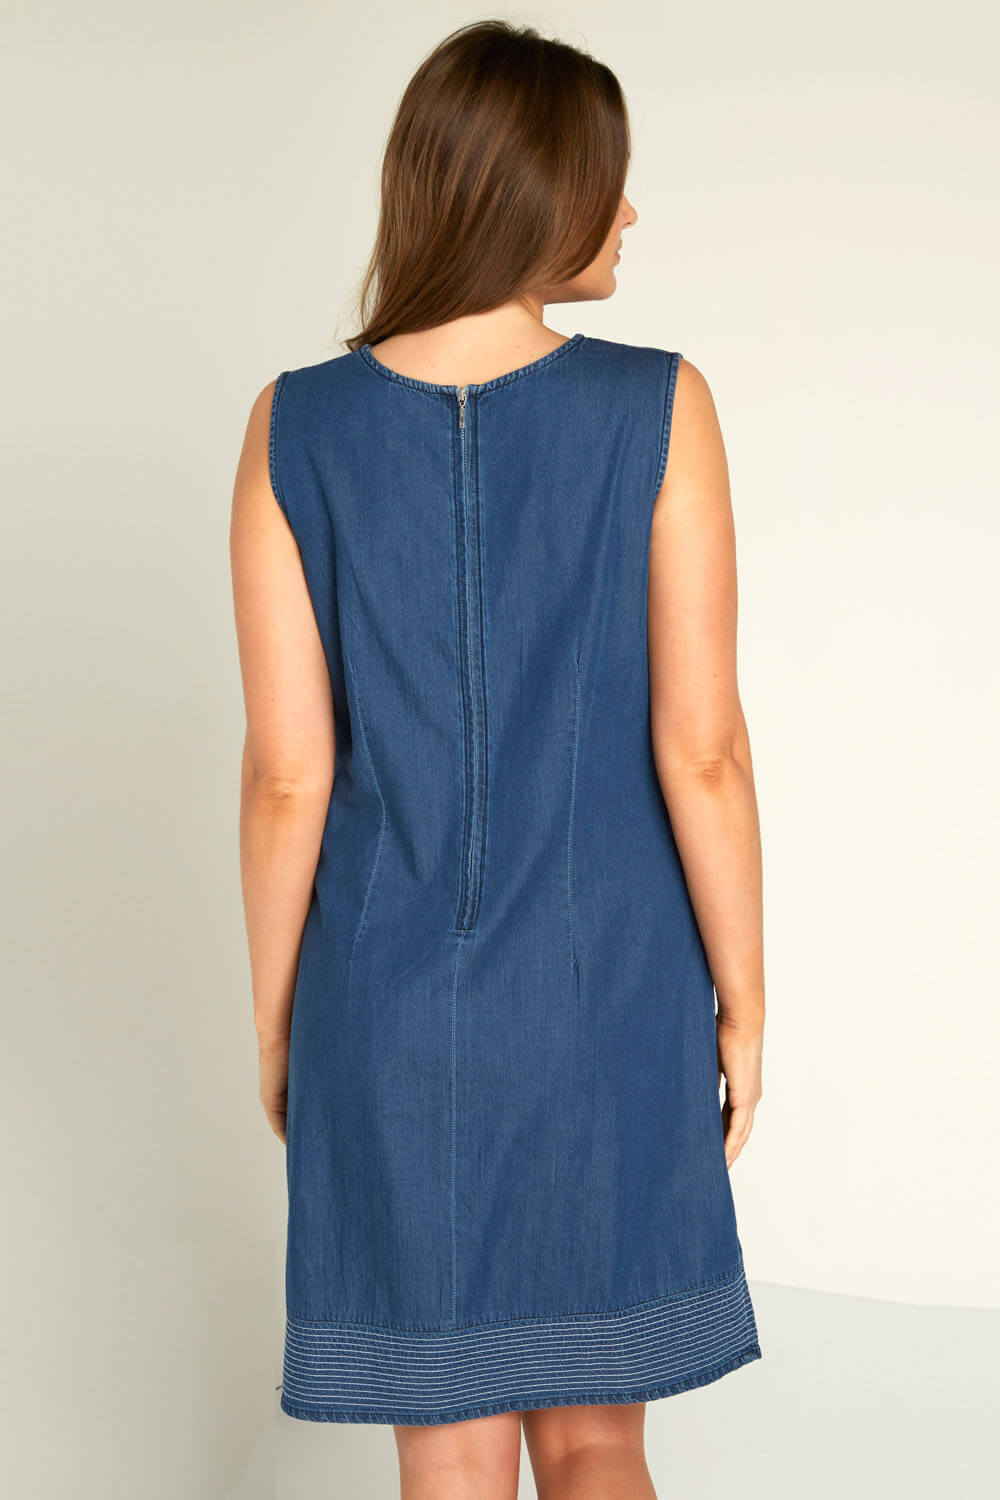 Blue V-Neck Denim Shift Dress, Image 2 of 3